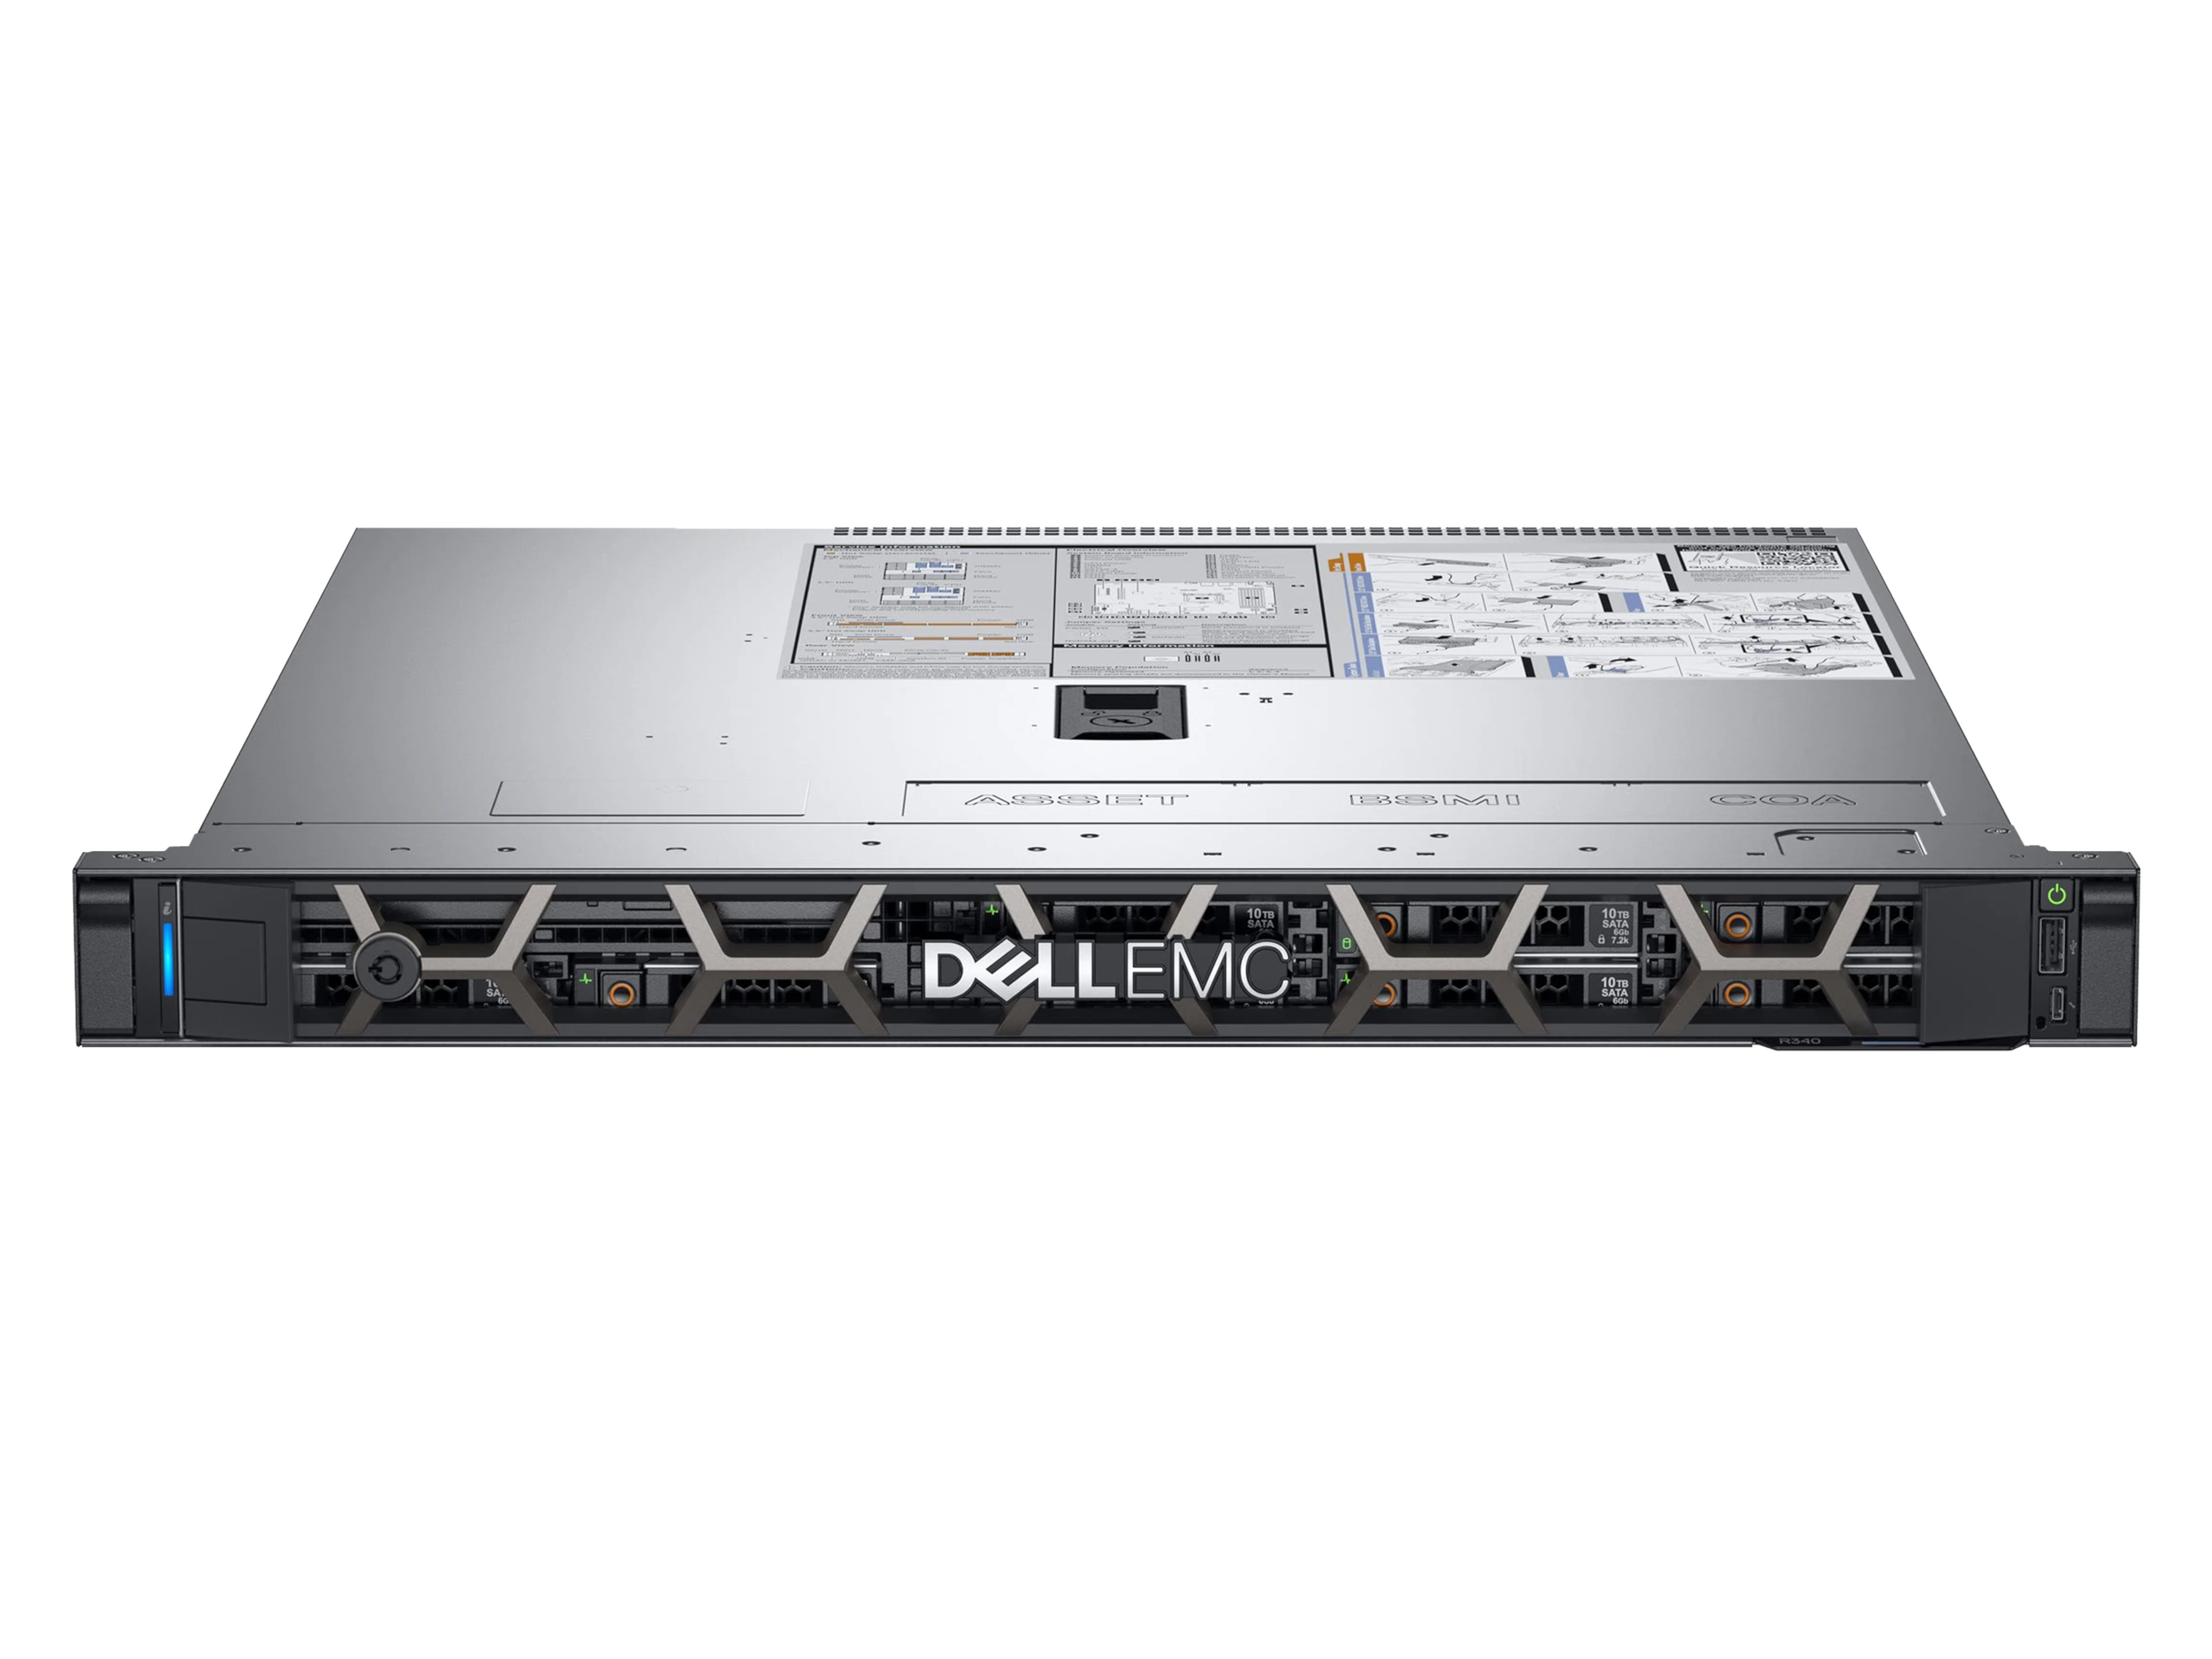 Dell PowerEdge R650